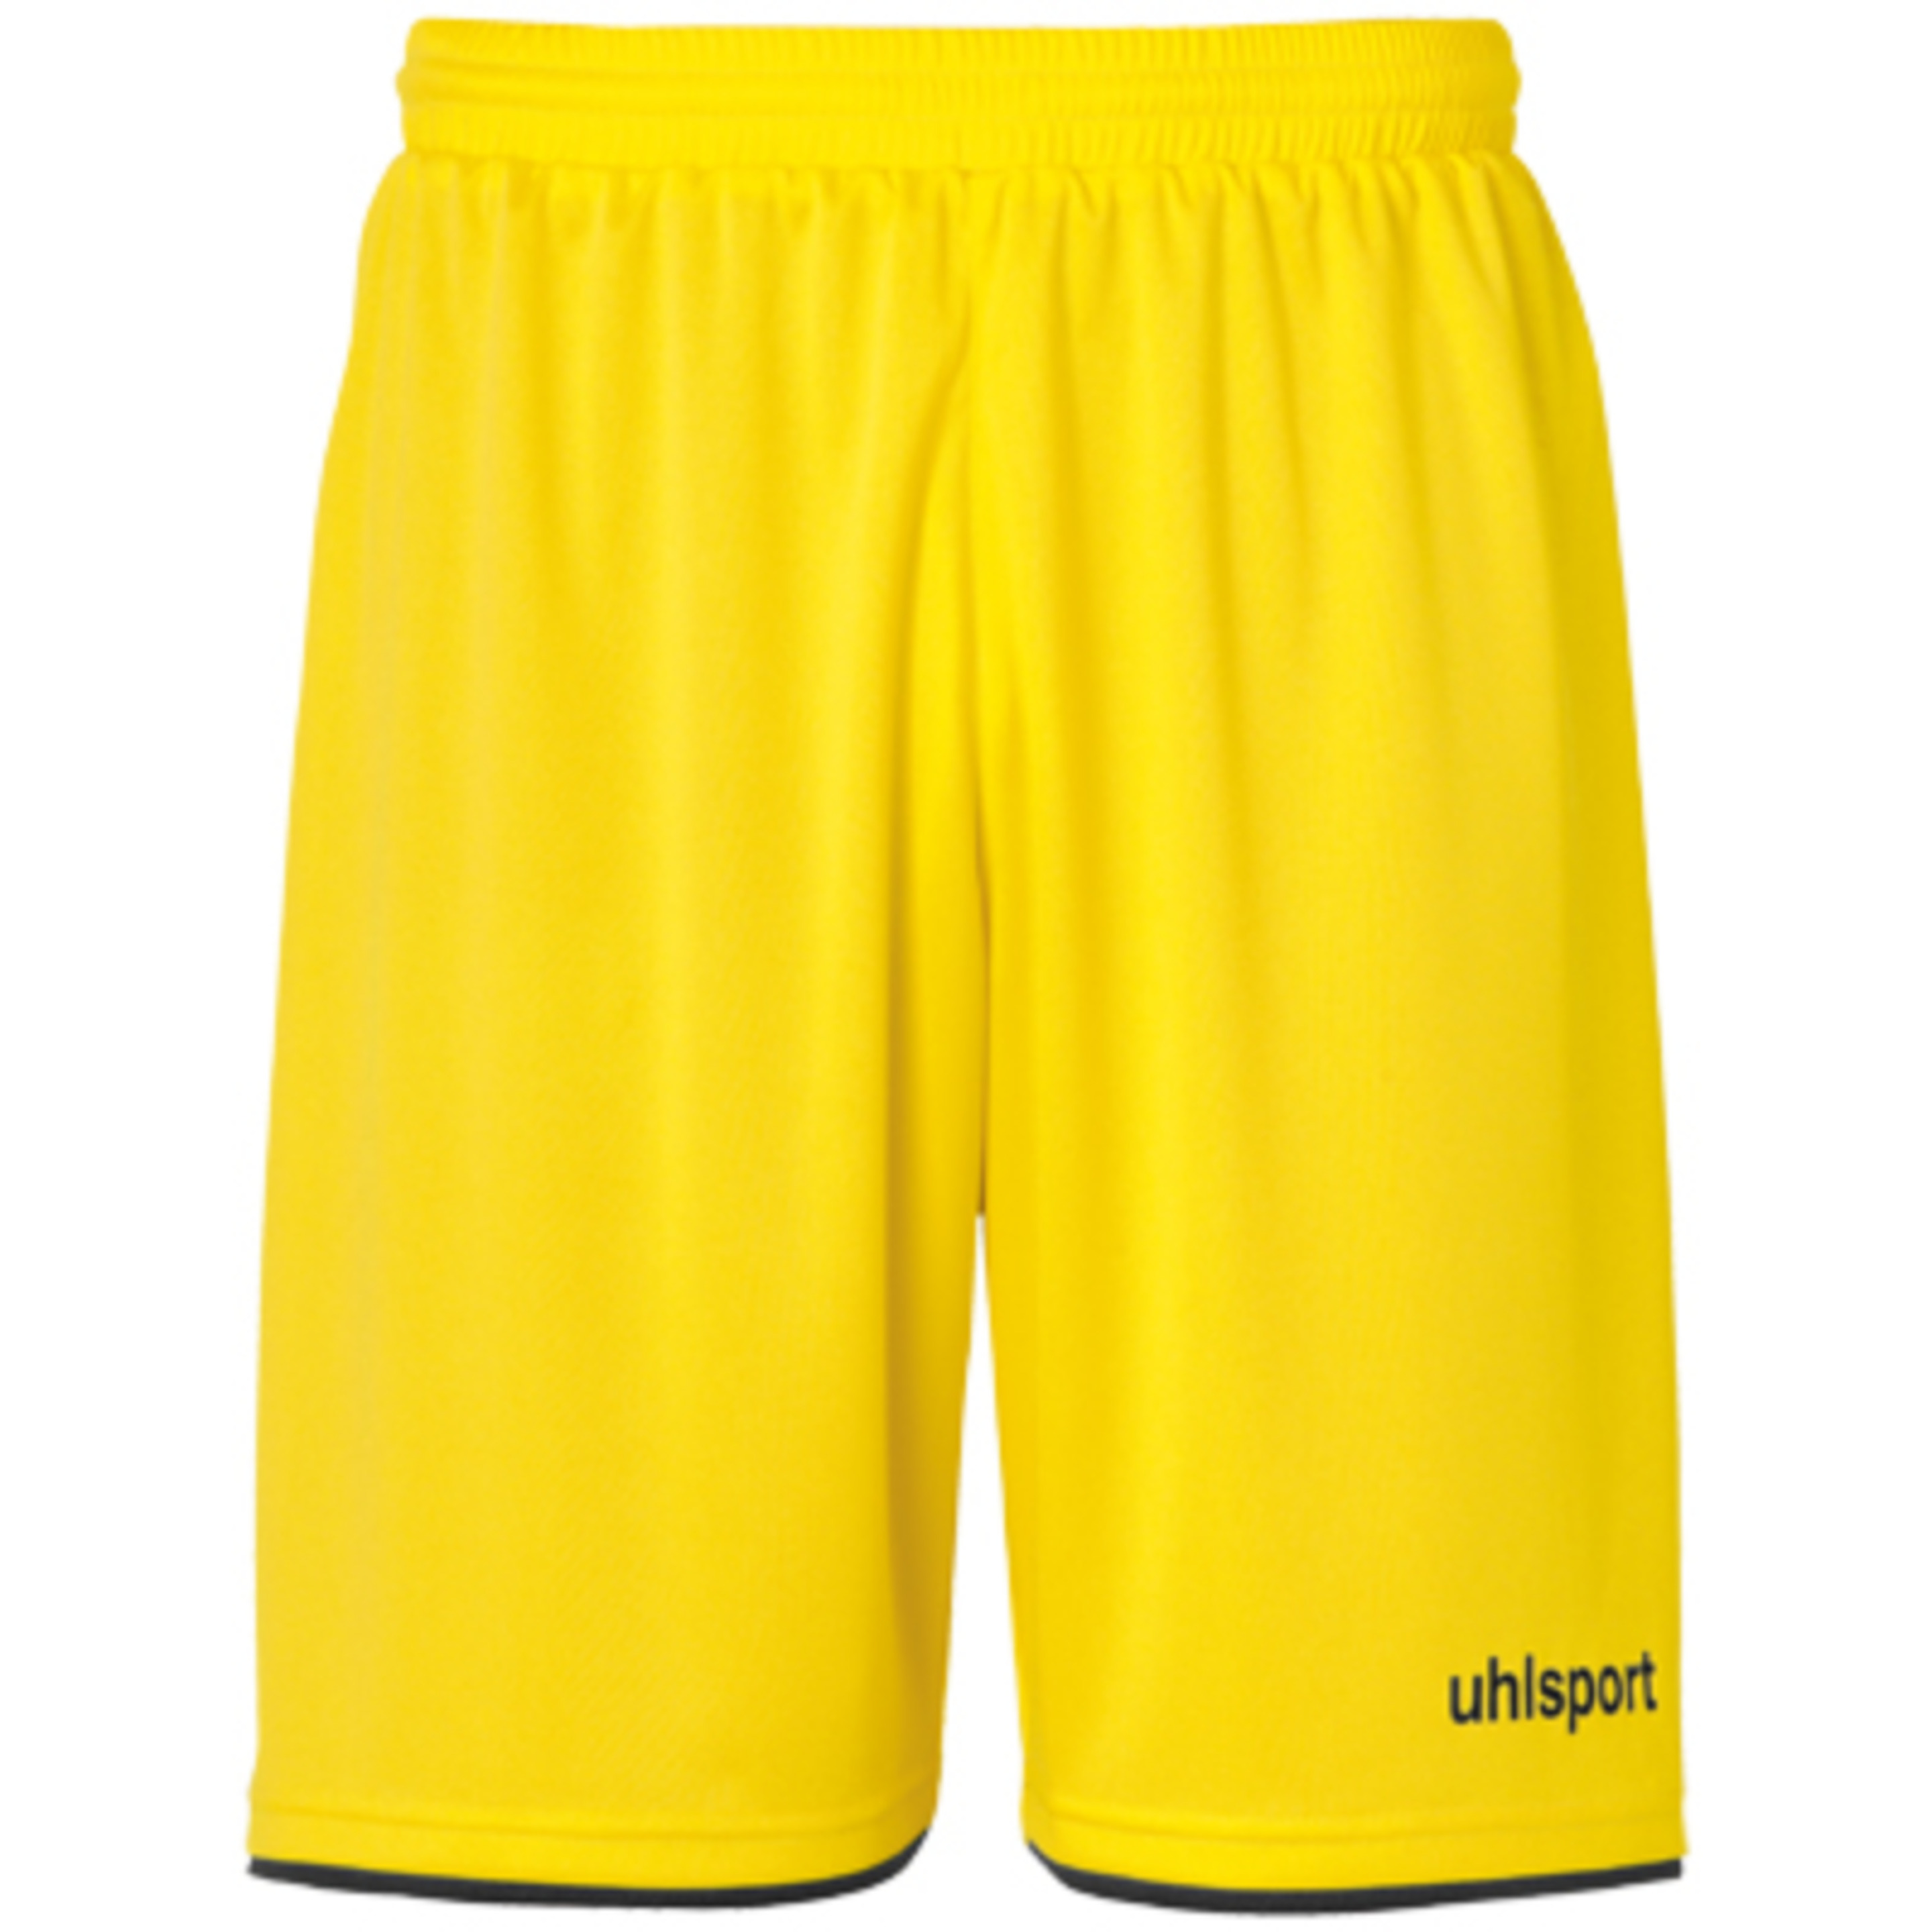 Club Shorts Lima Amarillo/negro Uhlsport